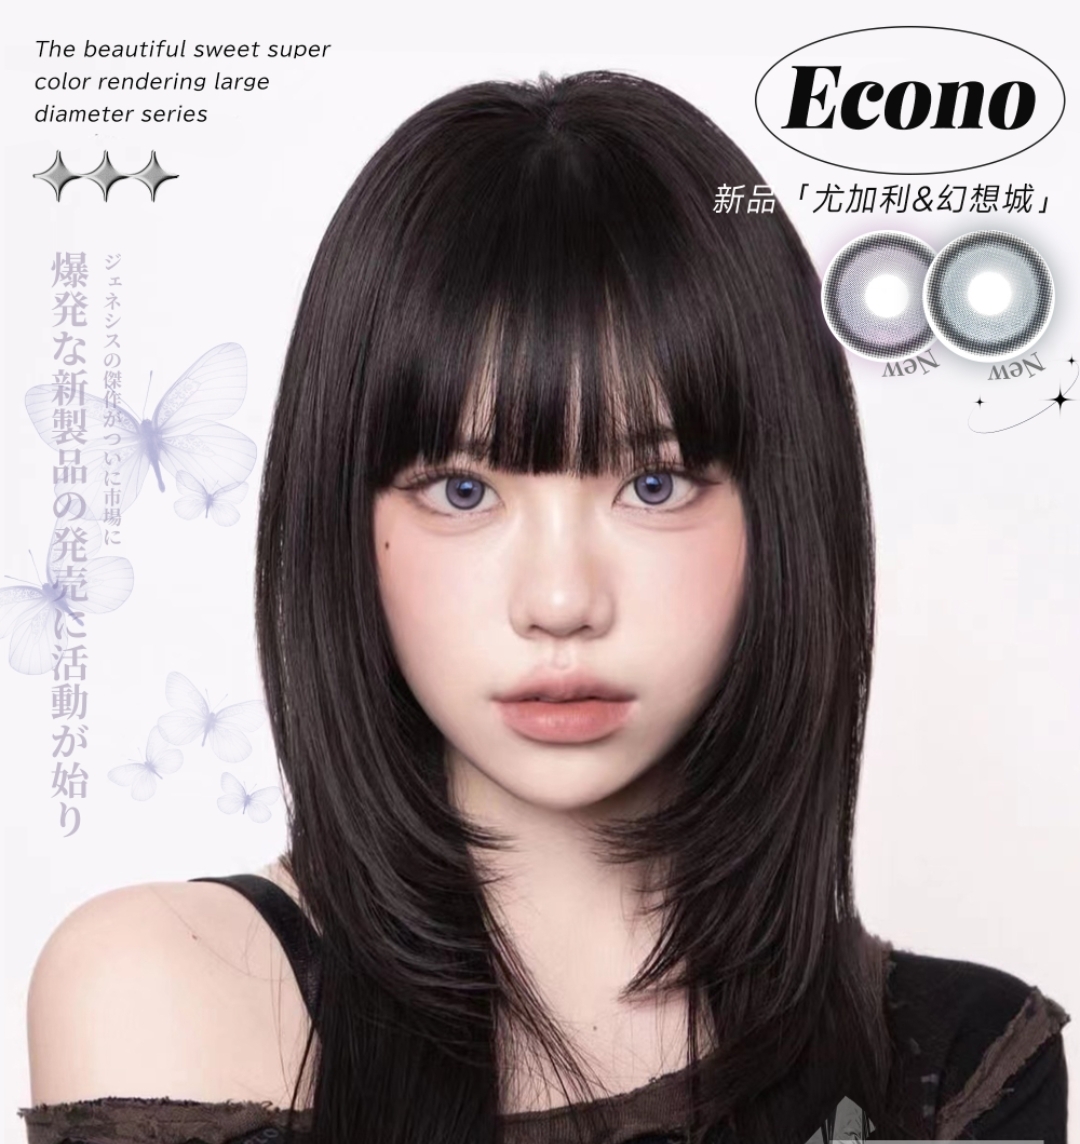 【上新】Econo美瞳 创世大作 尤加利#幻想城 梦幻Doll系微混血